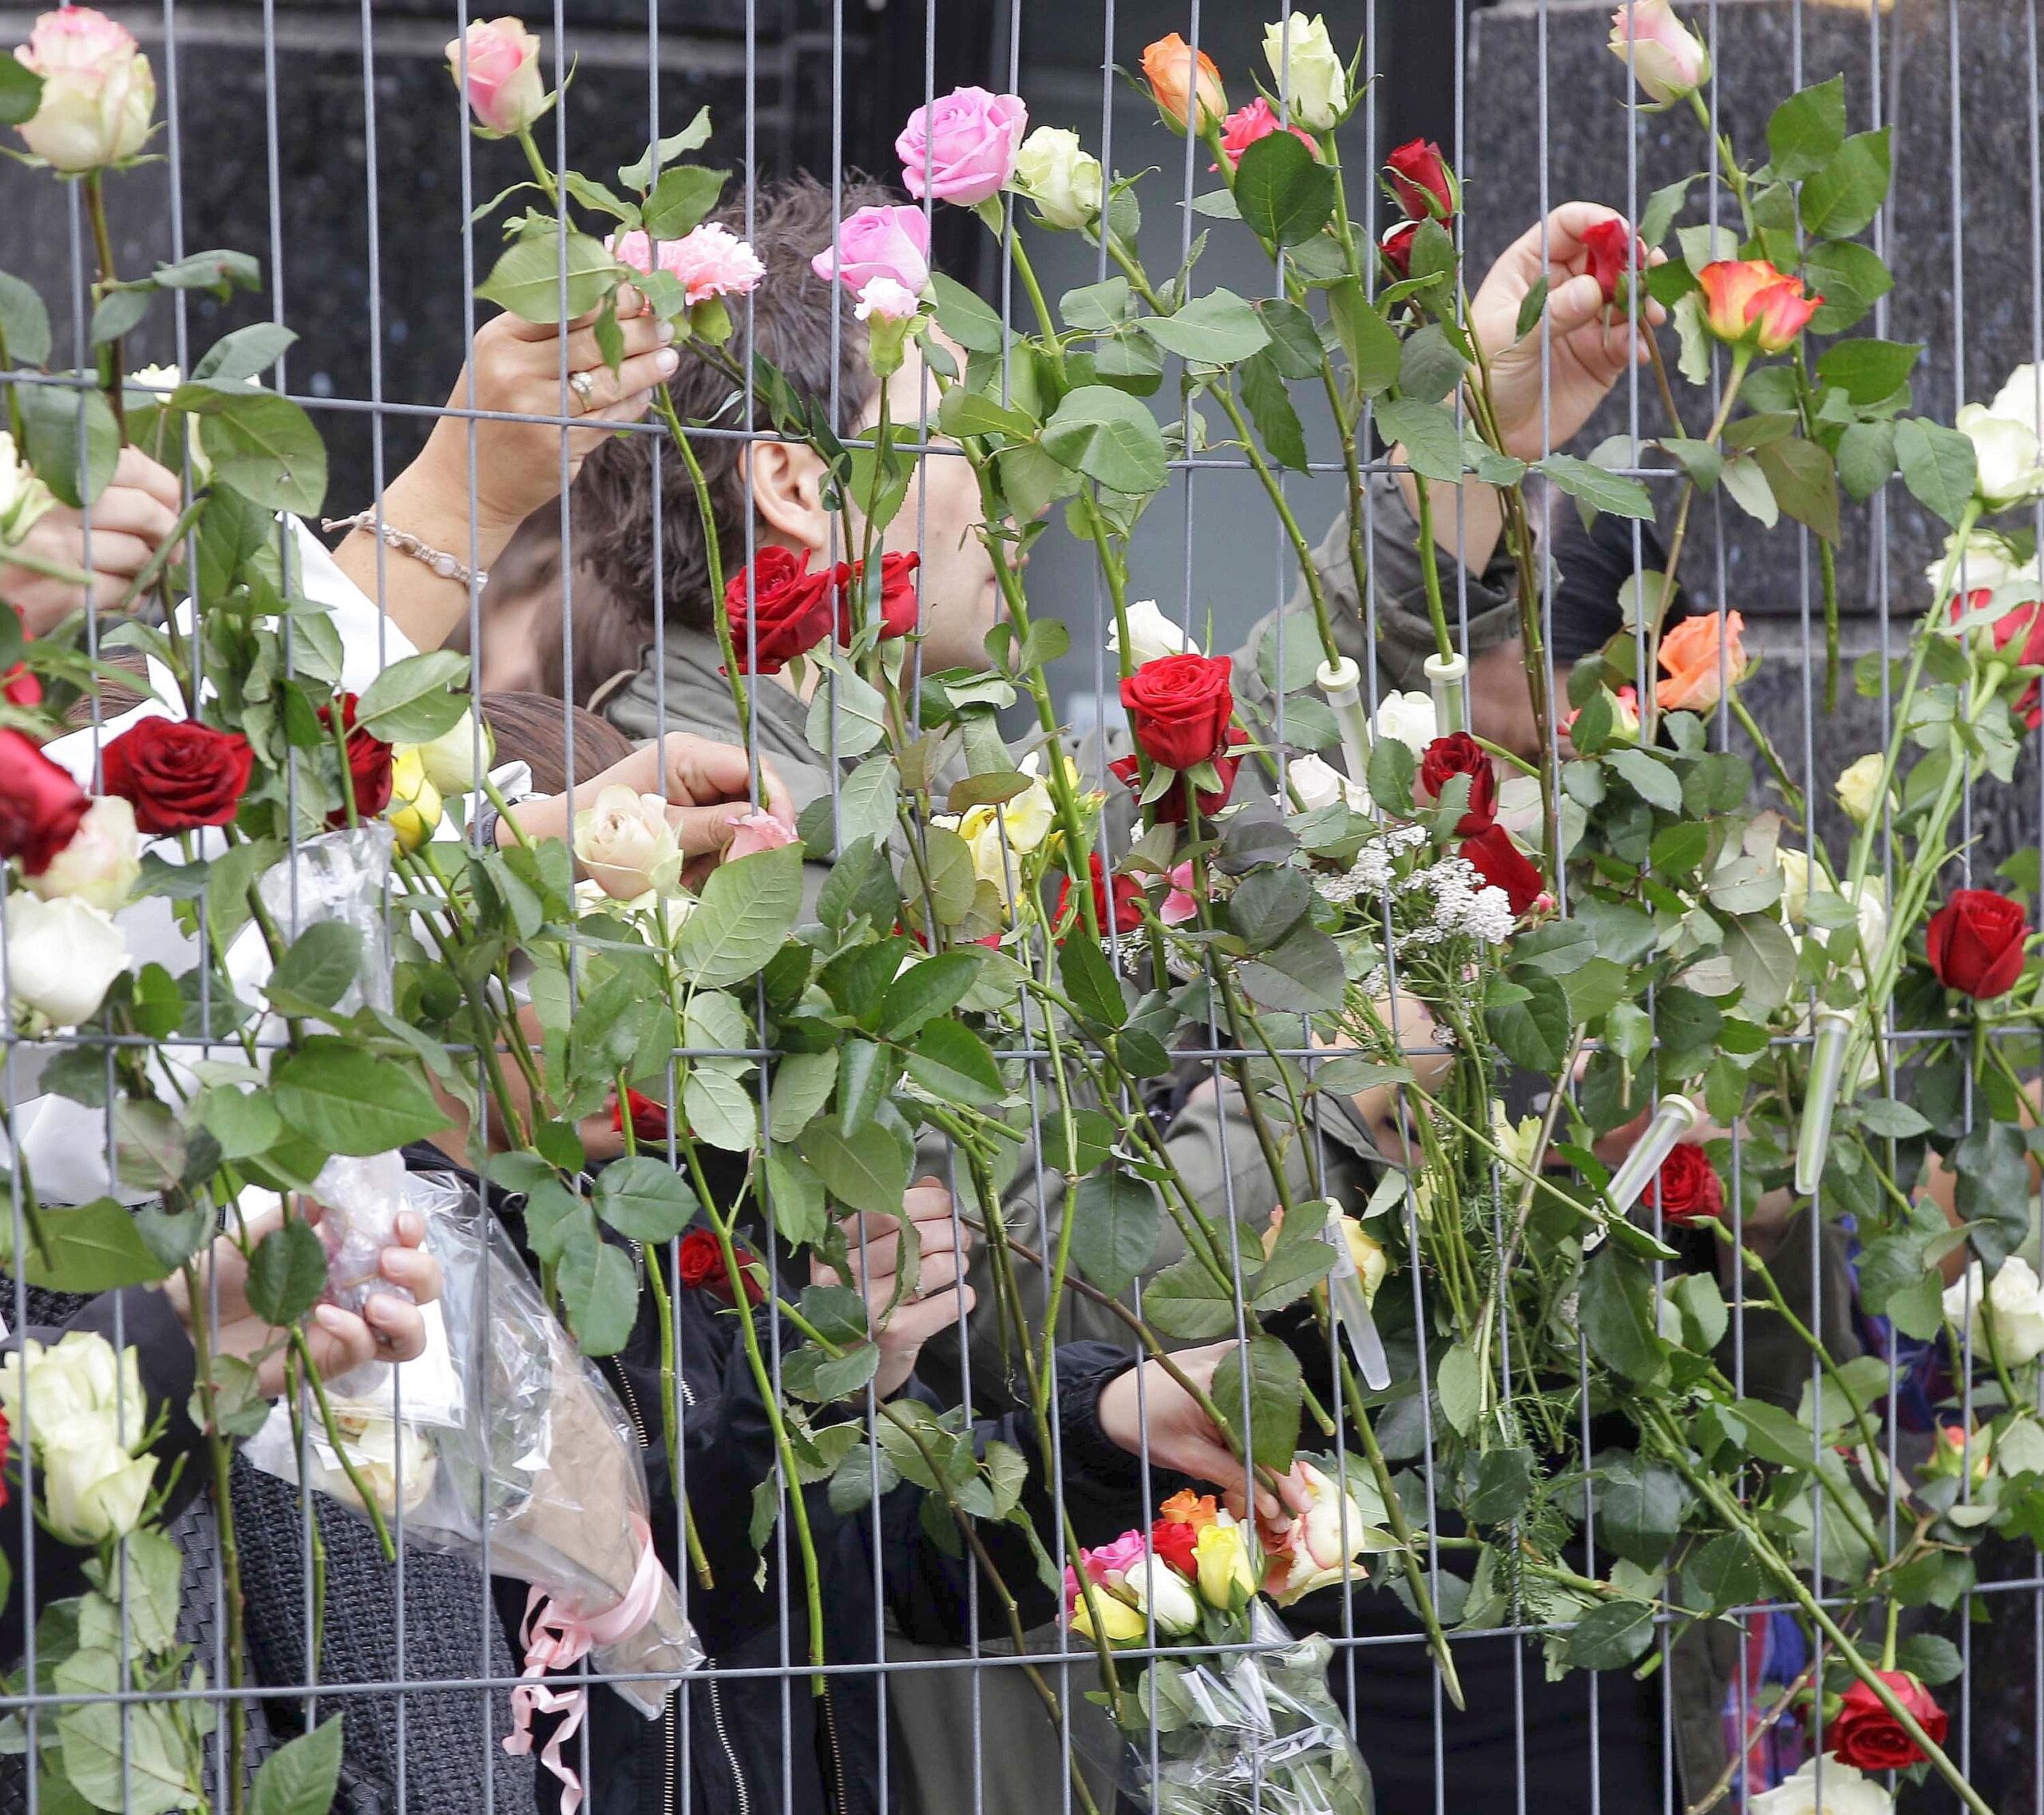 Viele Menschen pilgerten zum Ort der Bombenexplosion, um dort ihre Blumen niederzulegen.